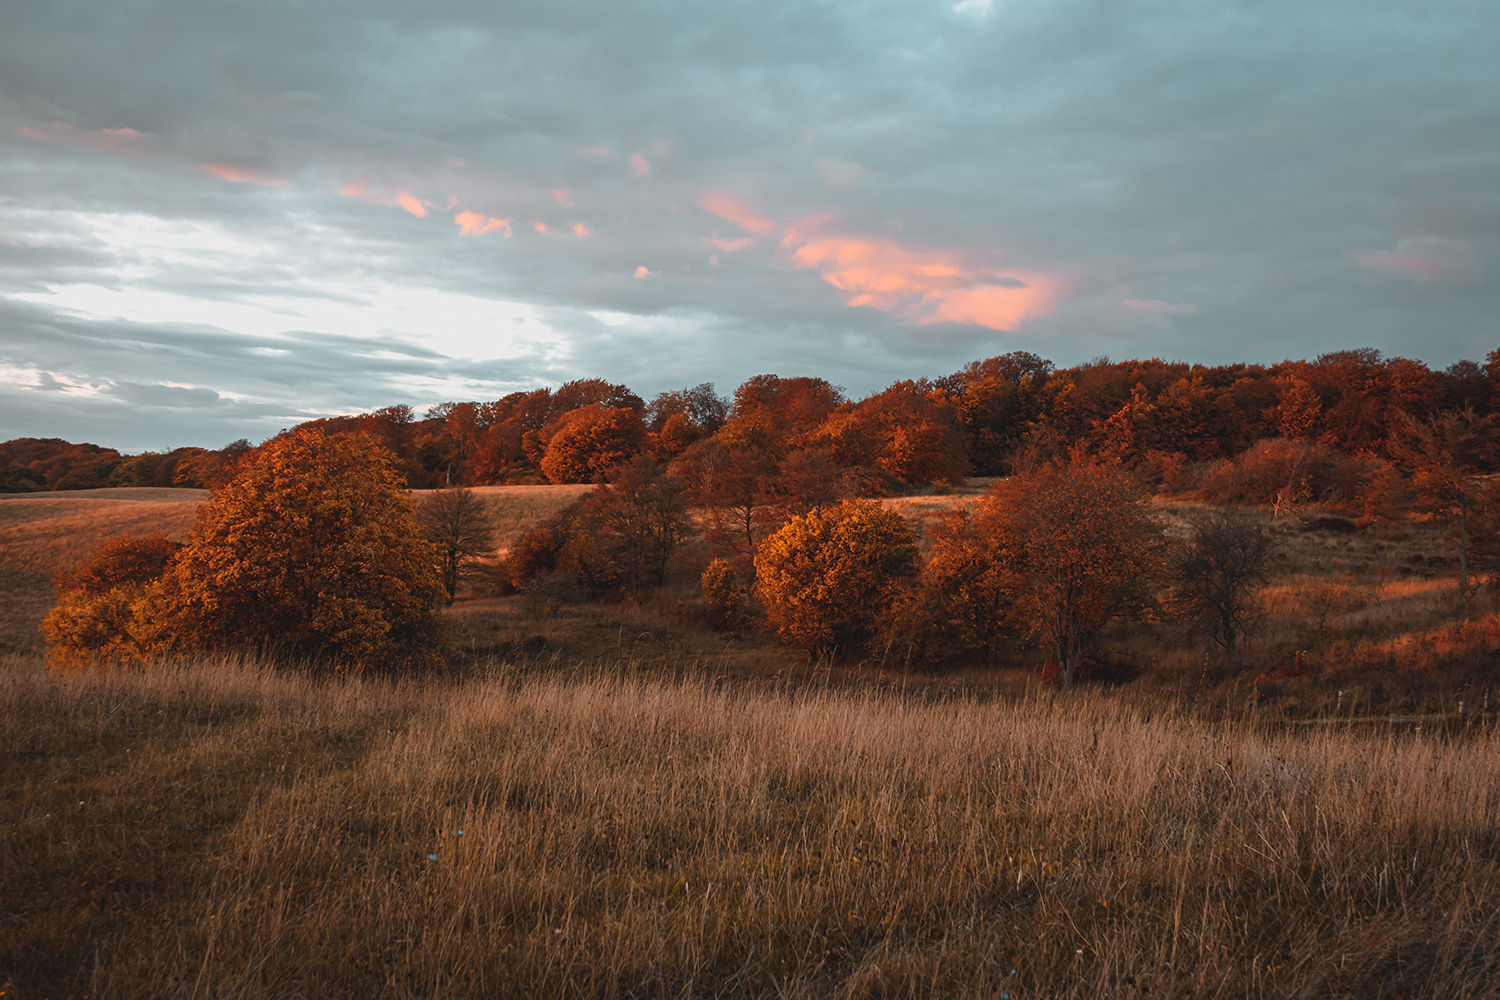 autumn trees on a golden field in sunset